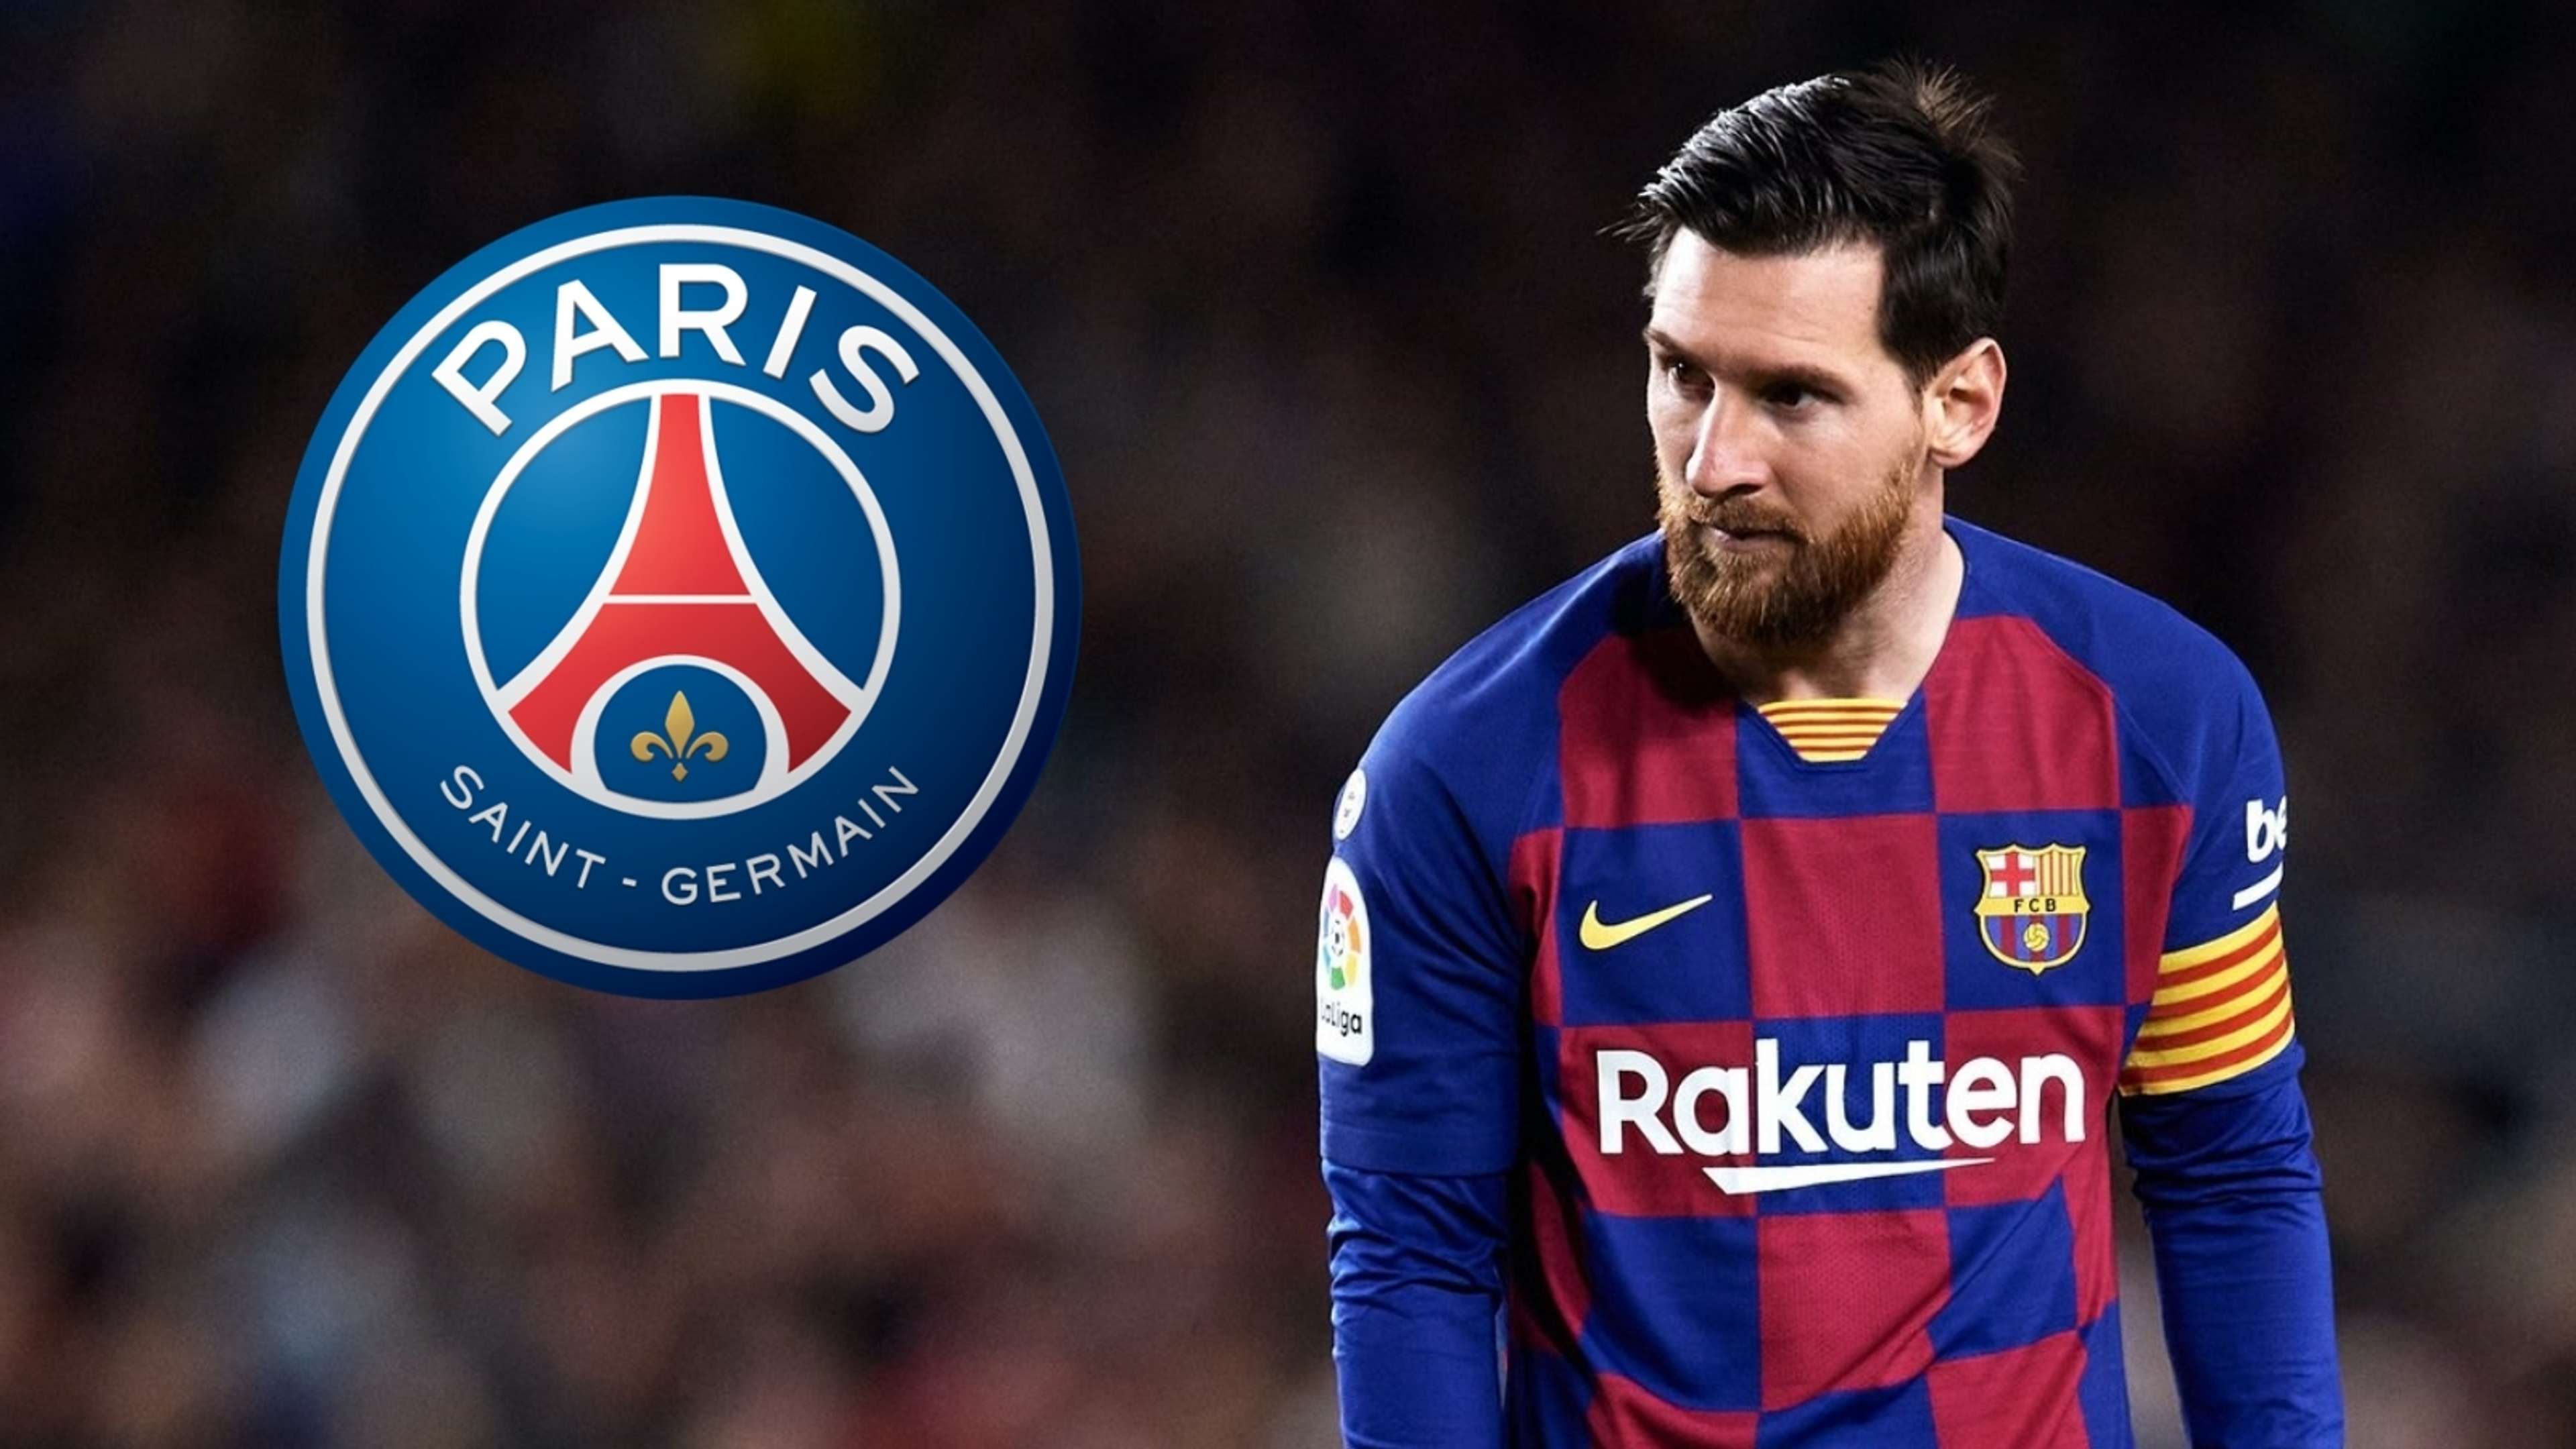 Lionel Messi/PSG composite